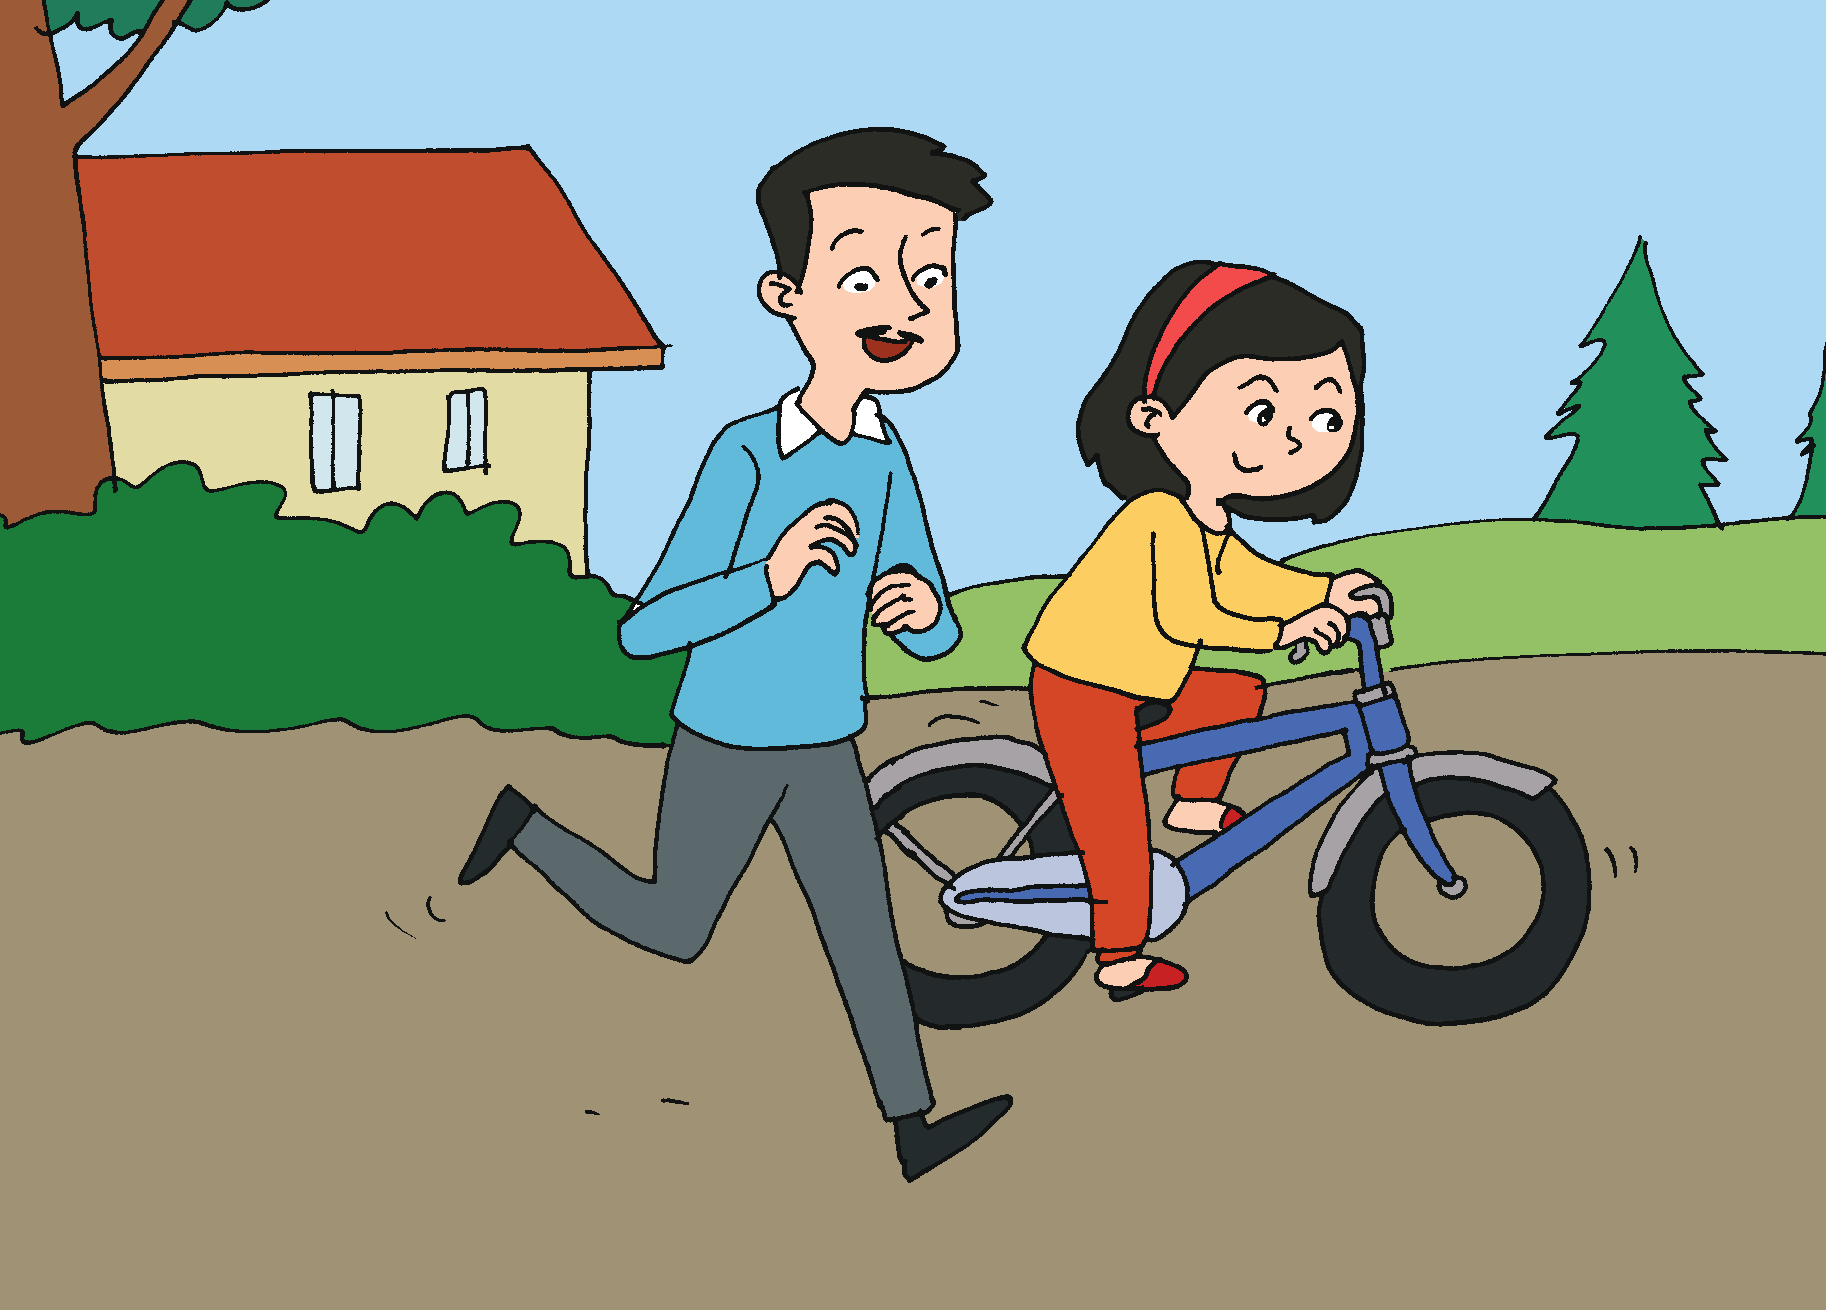 Gambar Dayu dan Kak Gusti sedang berolahraga bersama. Dayu menaiki sepeda dan Kak Gusti berlari di sampingya. Dayu dan Kak Gusti memiliki kegemaran olahraga berbeda.